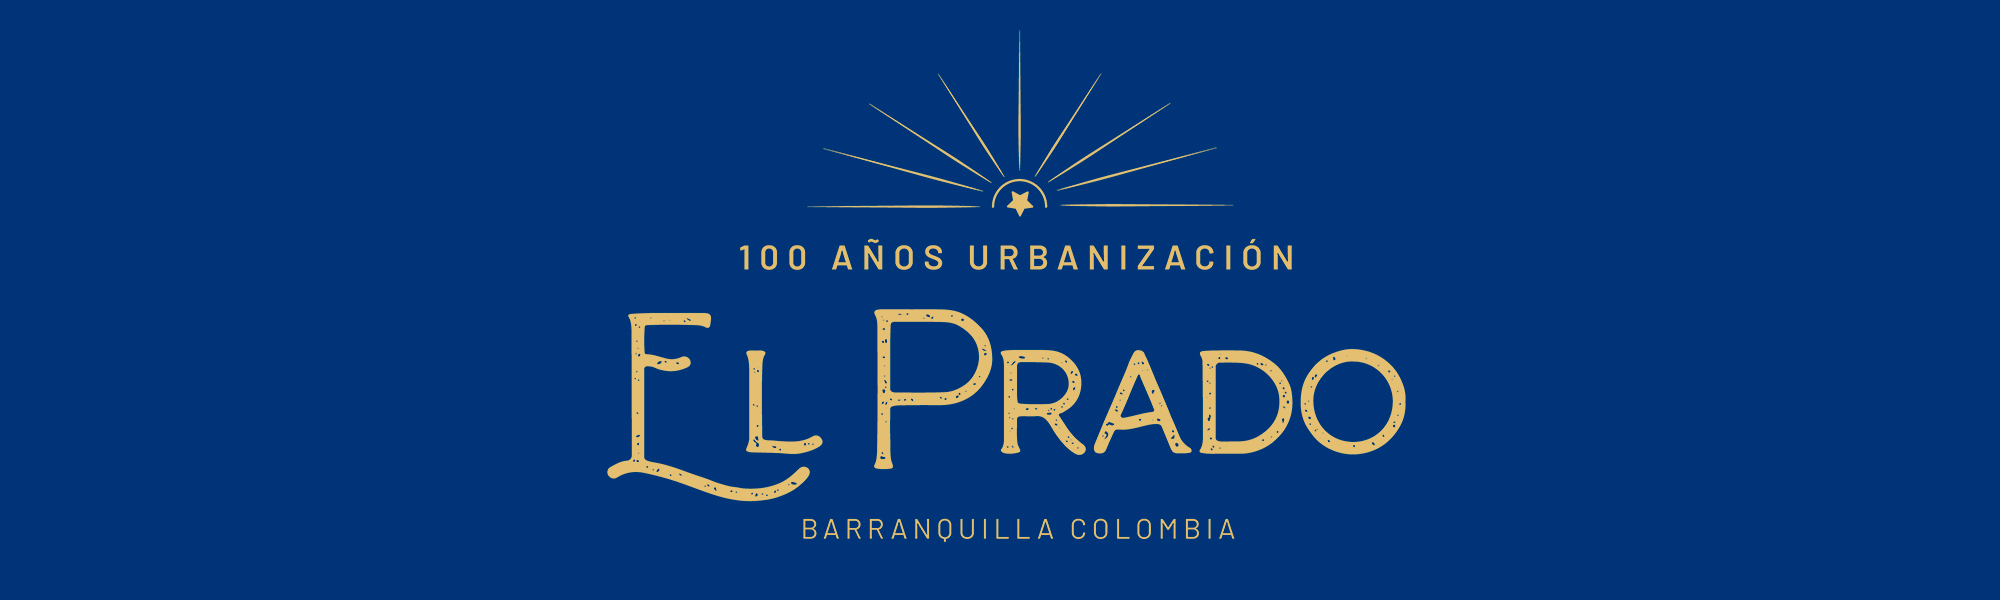 Banner 100 años El Prado